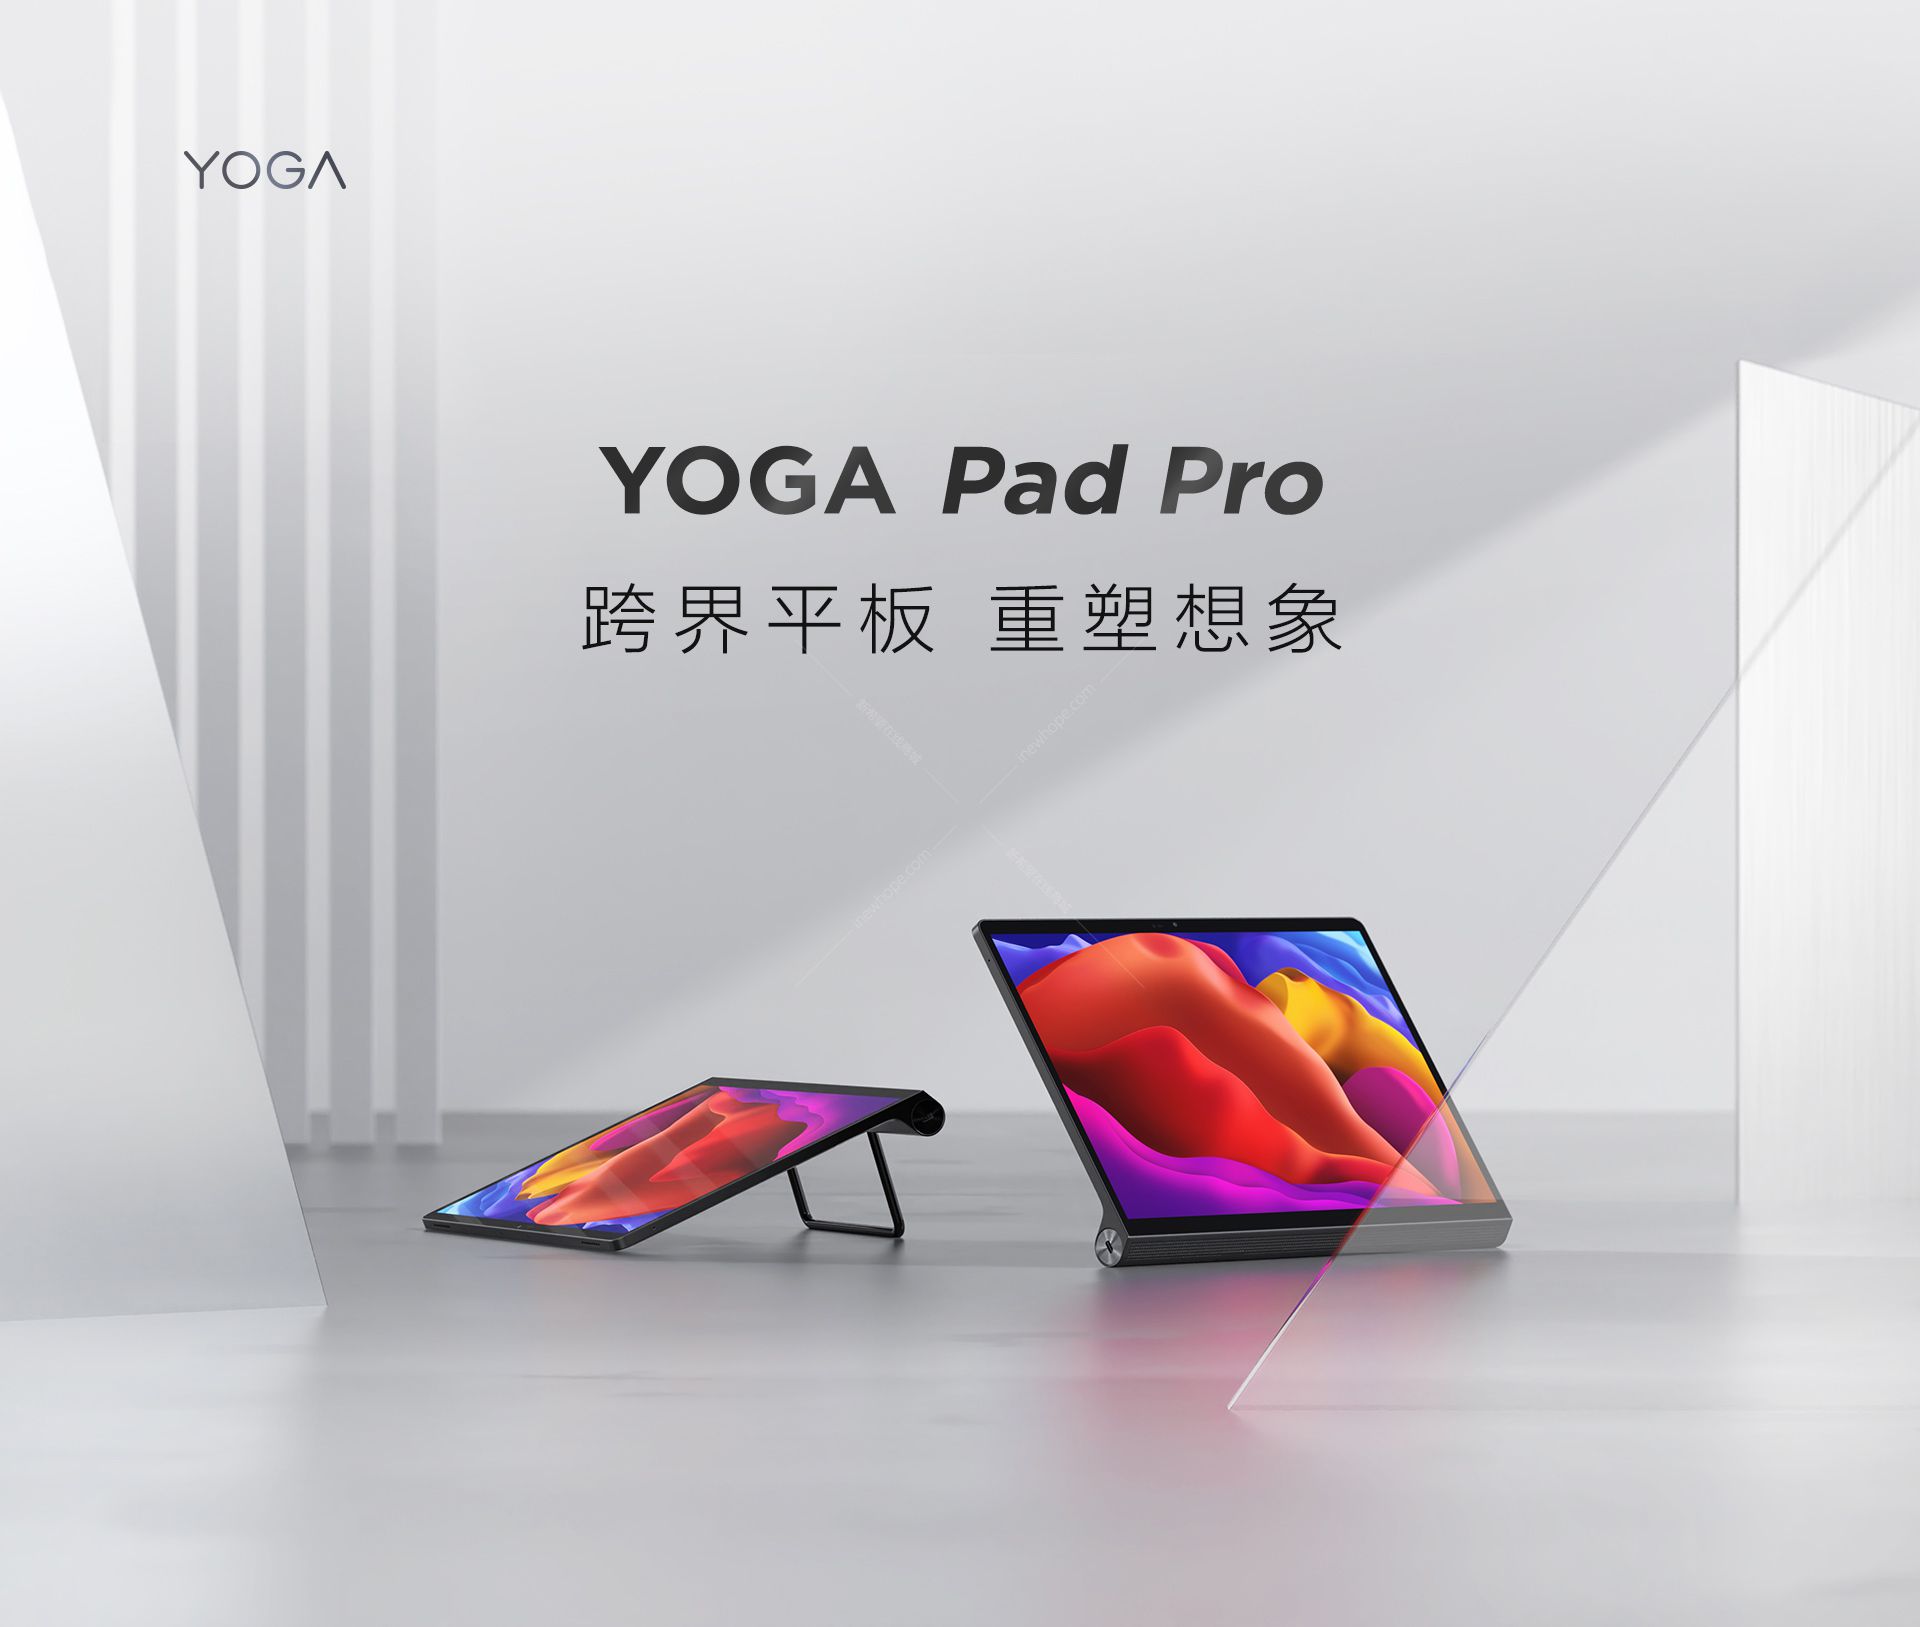 联想平板yogapadpro高通骁龙87013英寸平板电脑256g8gram玄青黑